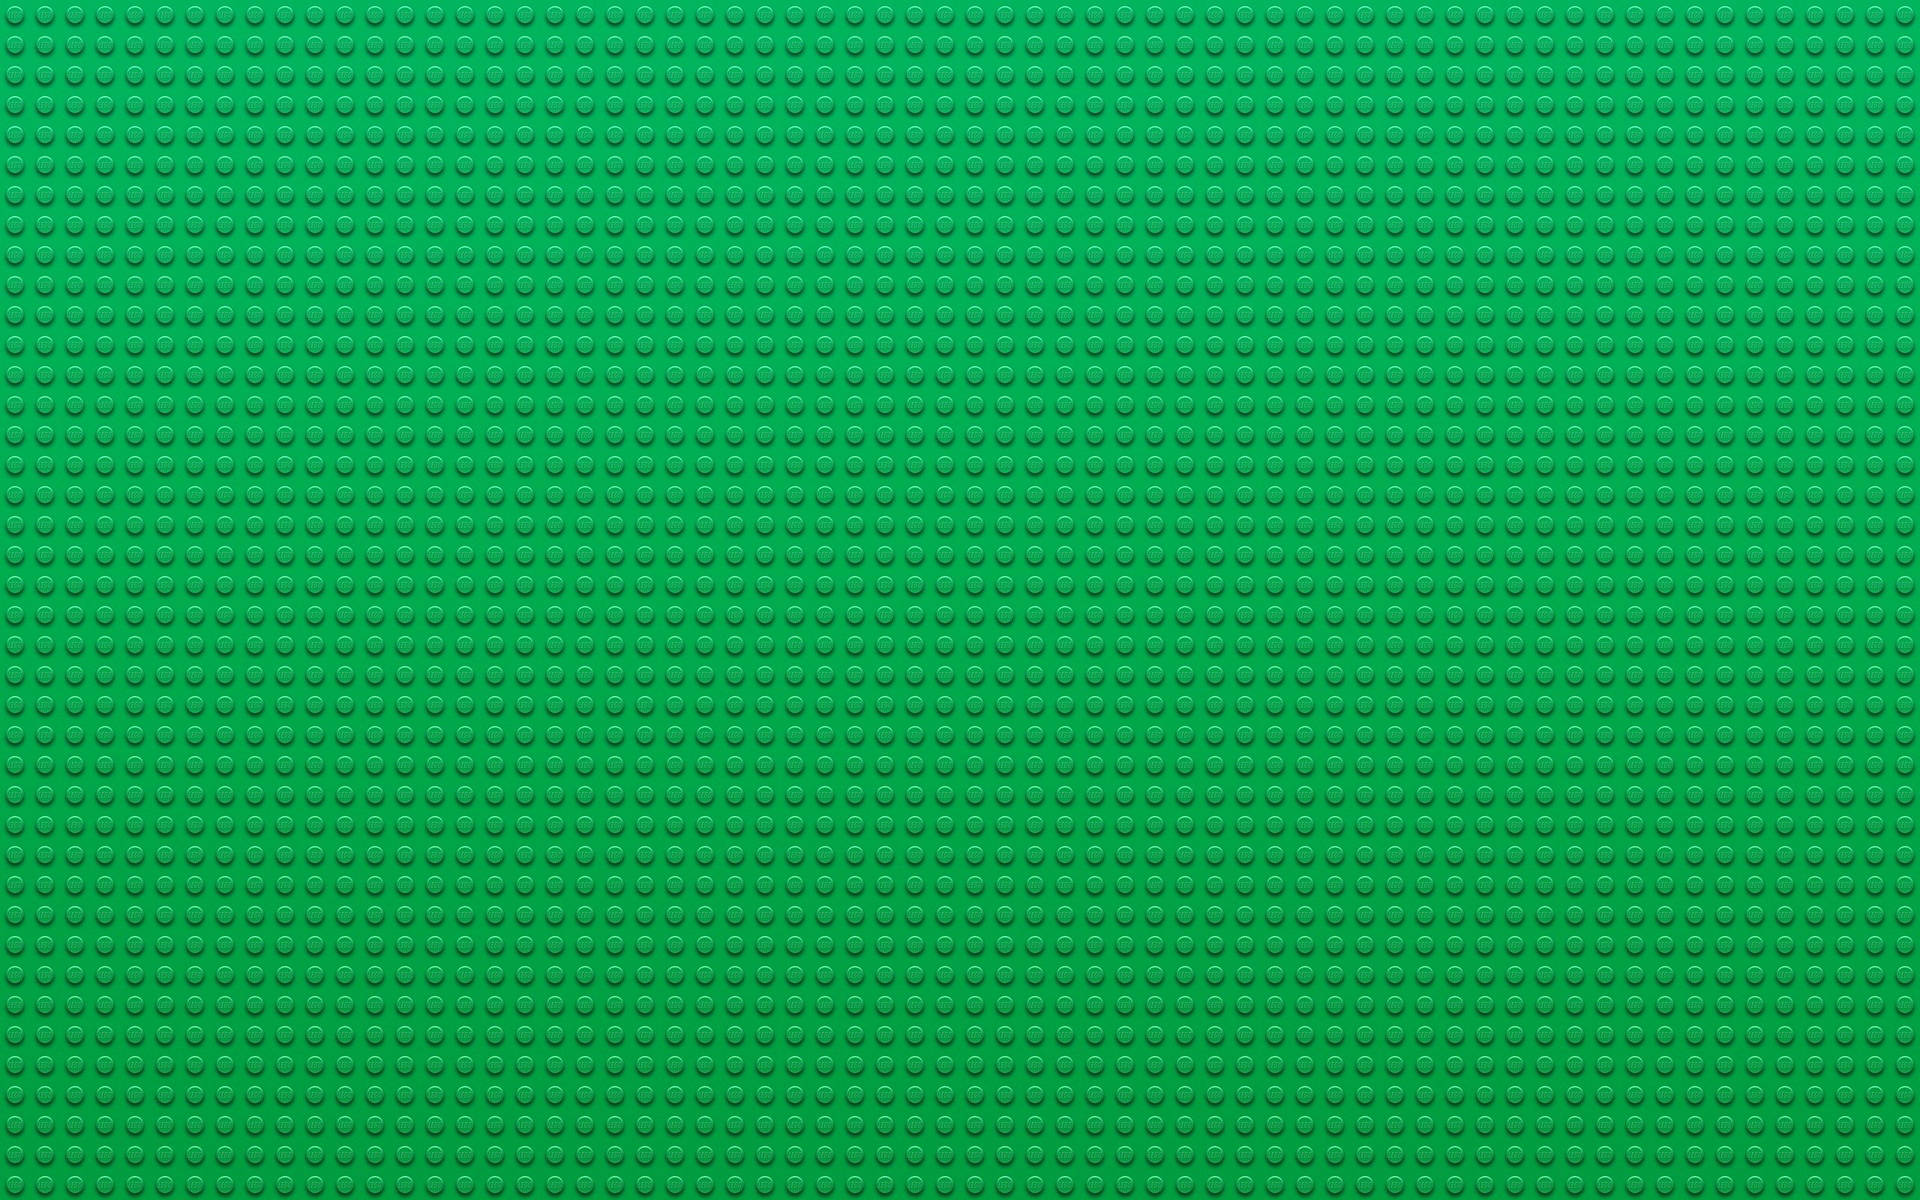 Hd Lego Green Patterns